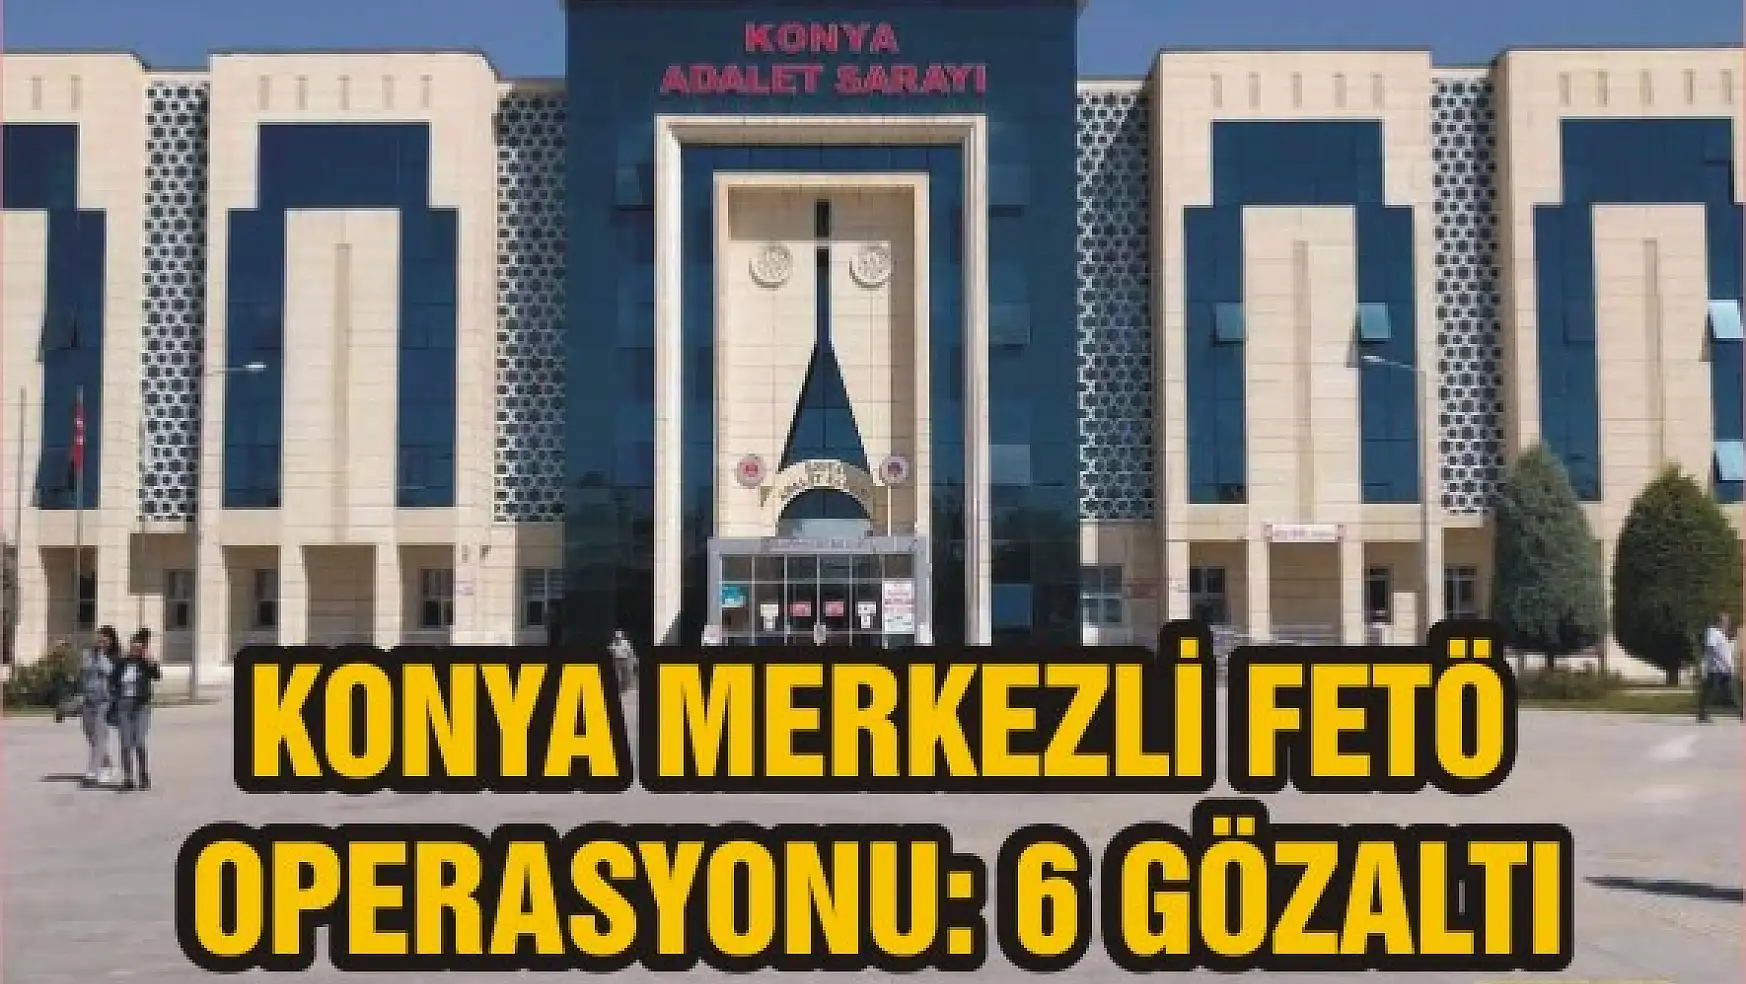 Konya merkezli FETÖ operasyonu: 6 gözaltı